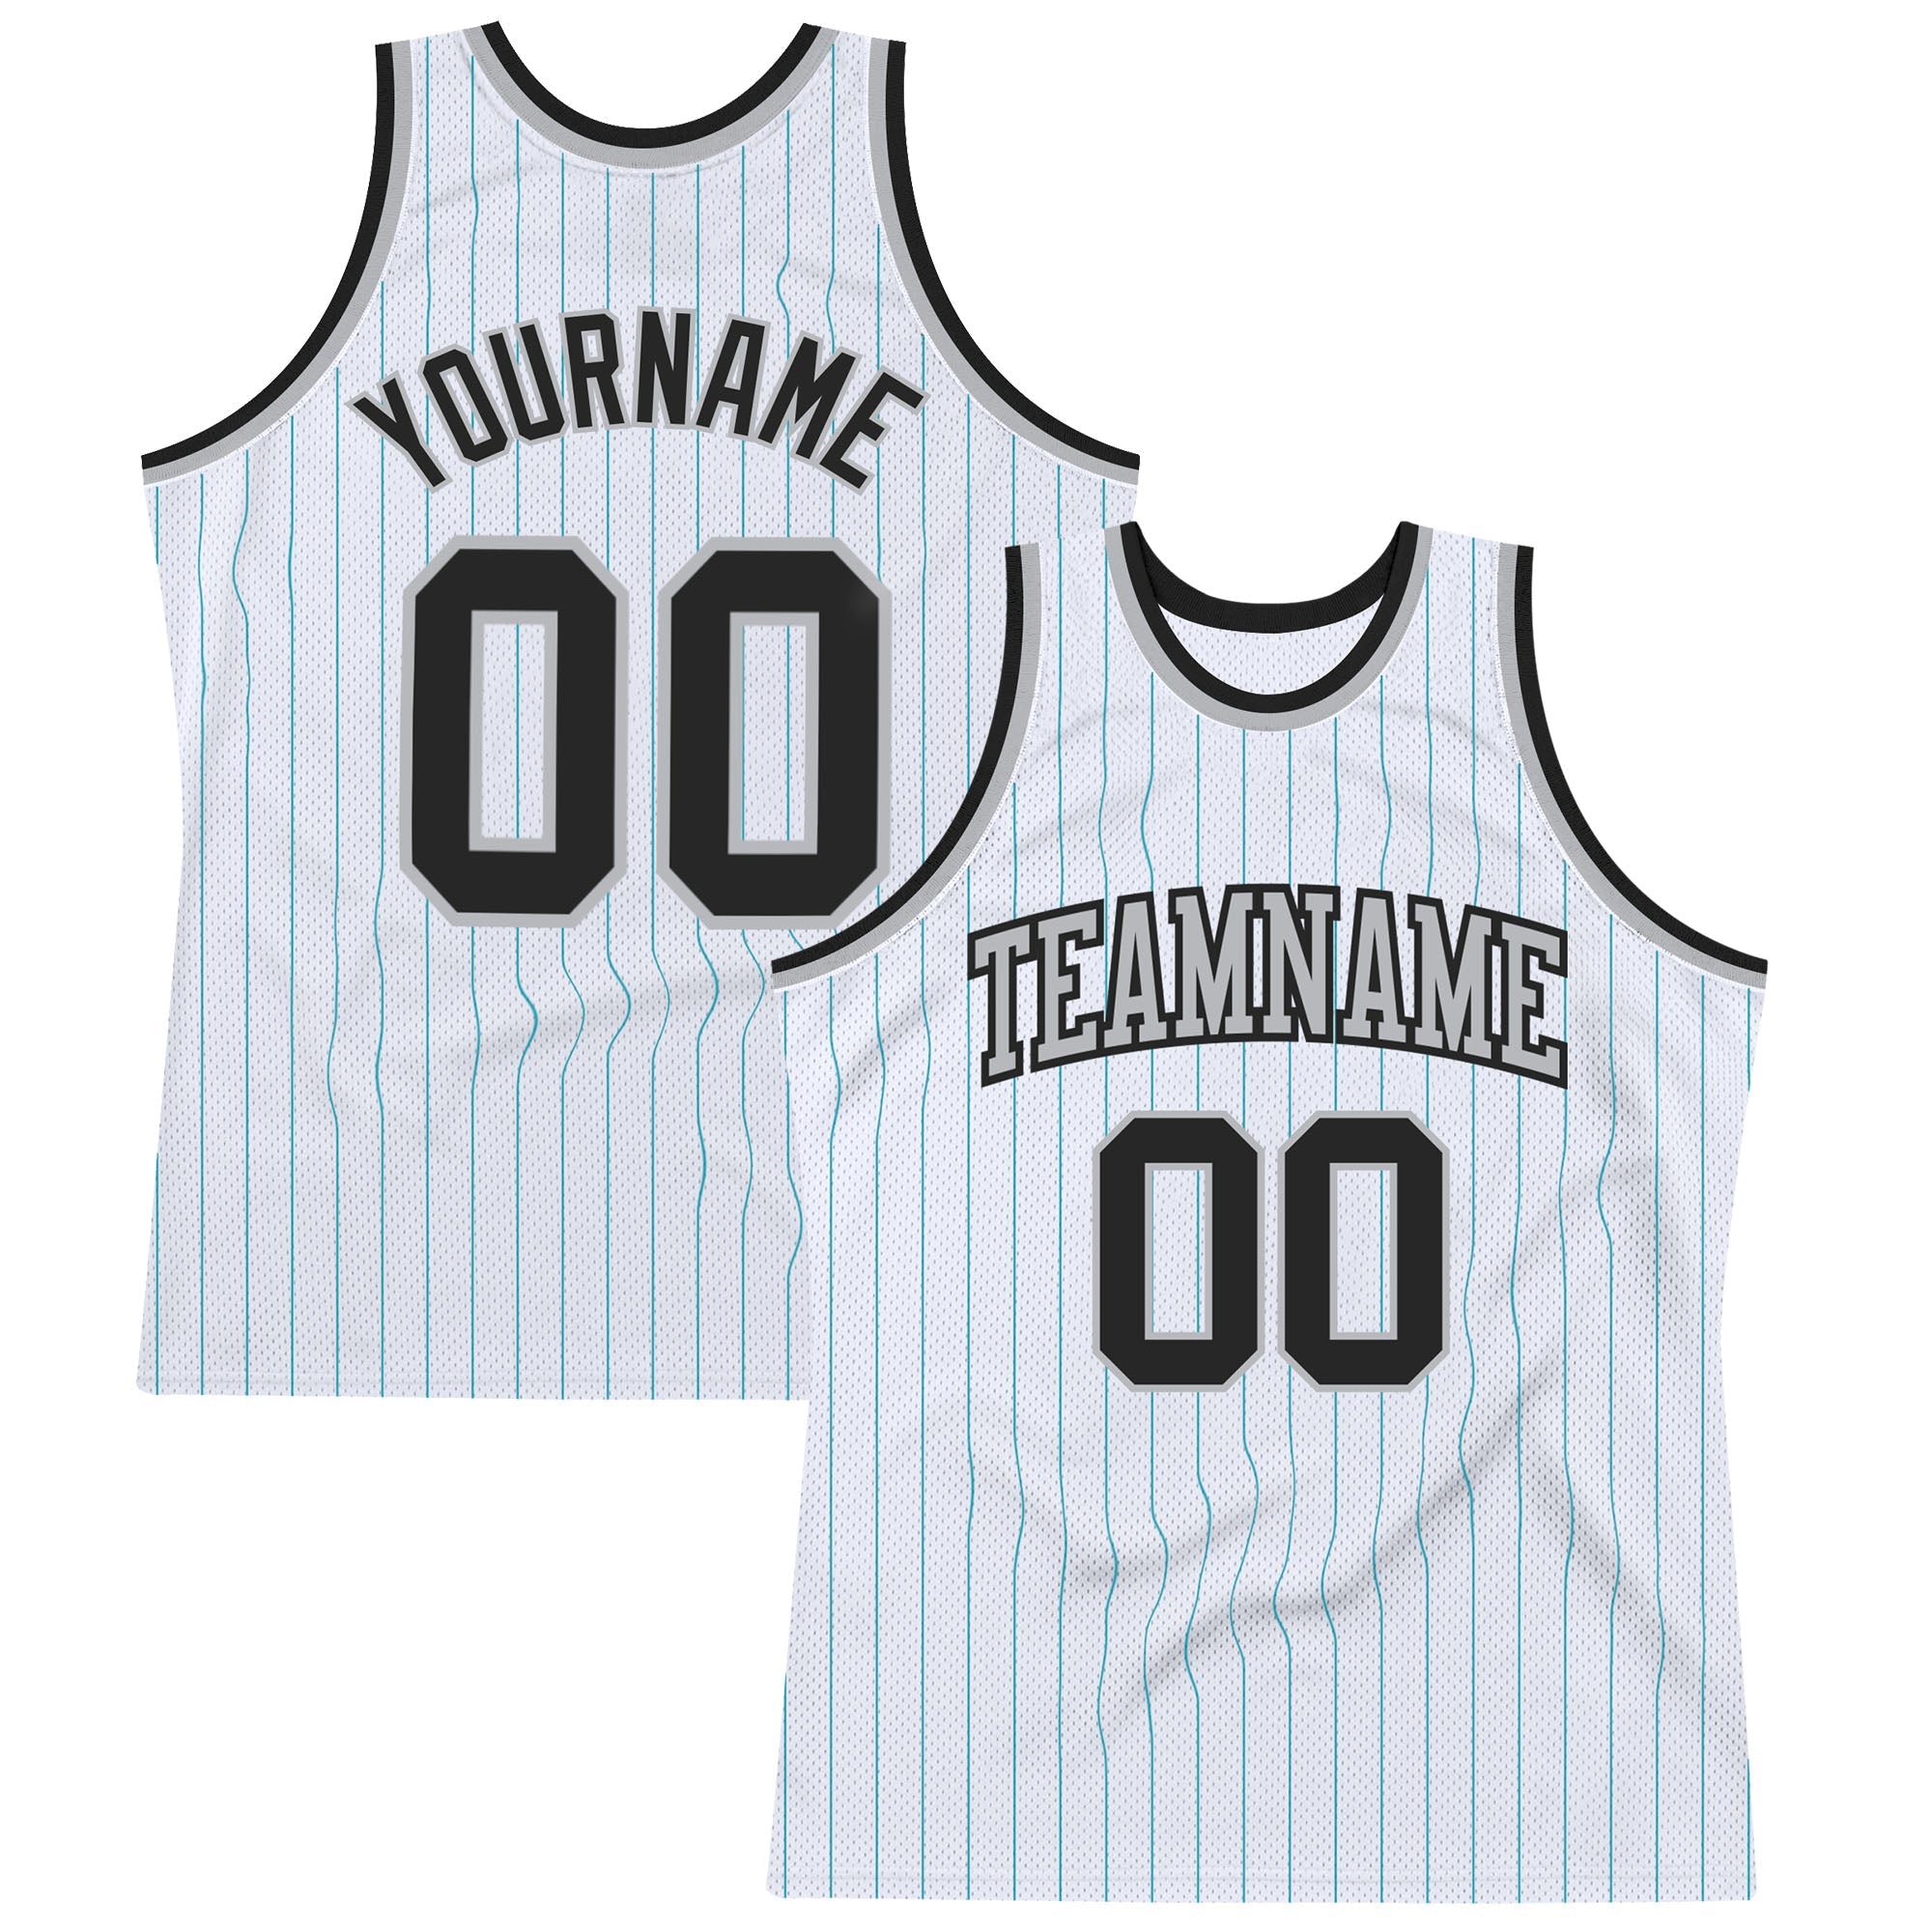 Camisa de basquete autêntica com listras brancas pretas e cinza personalizadas